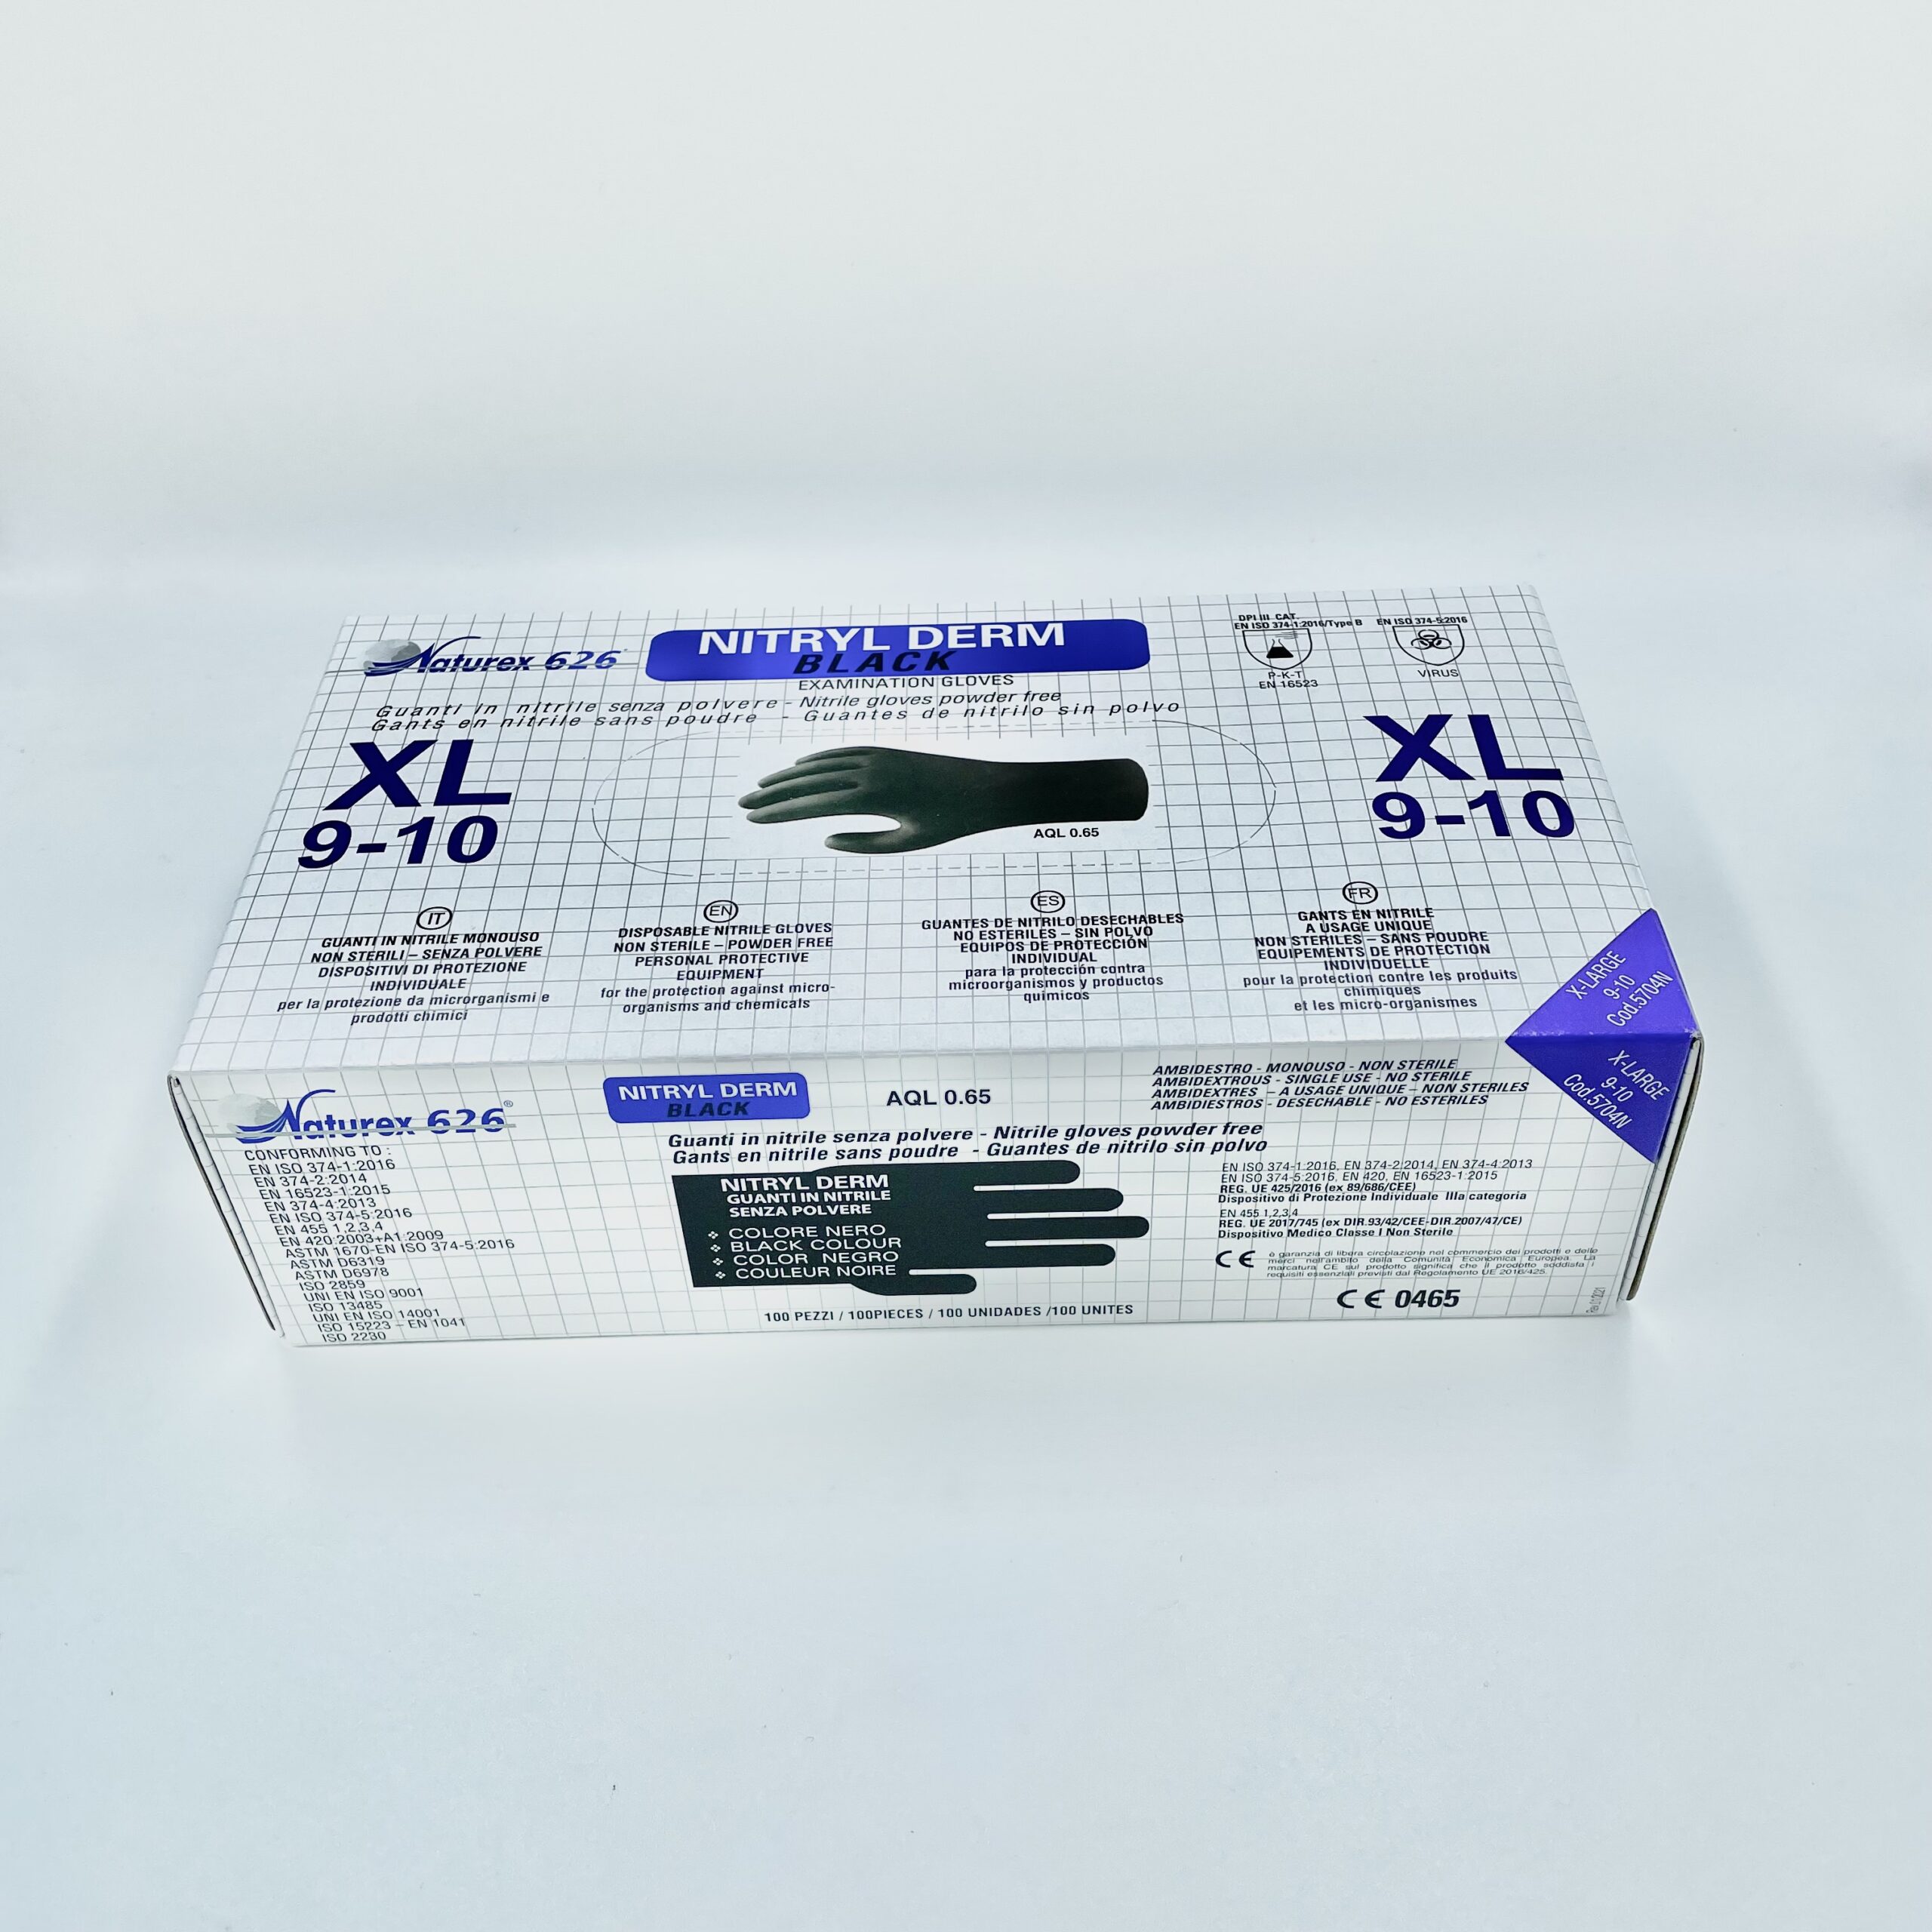 Guanti in nitrile monouso 100pz - NERI - Taglia 9-10 XL EXTRA-LARGE -  Olcelli Farmaceutici